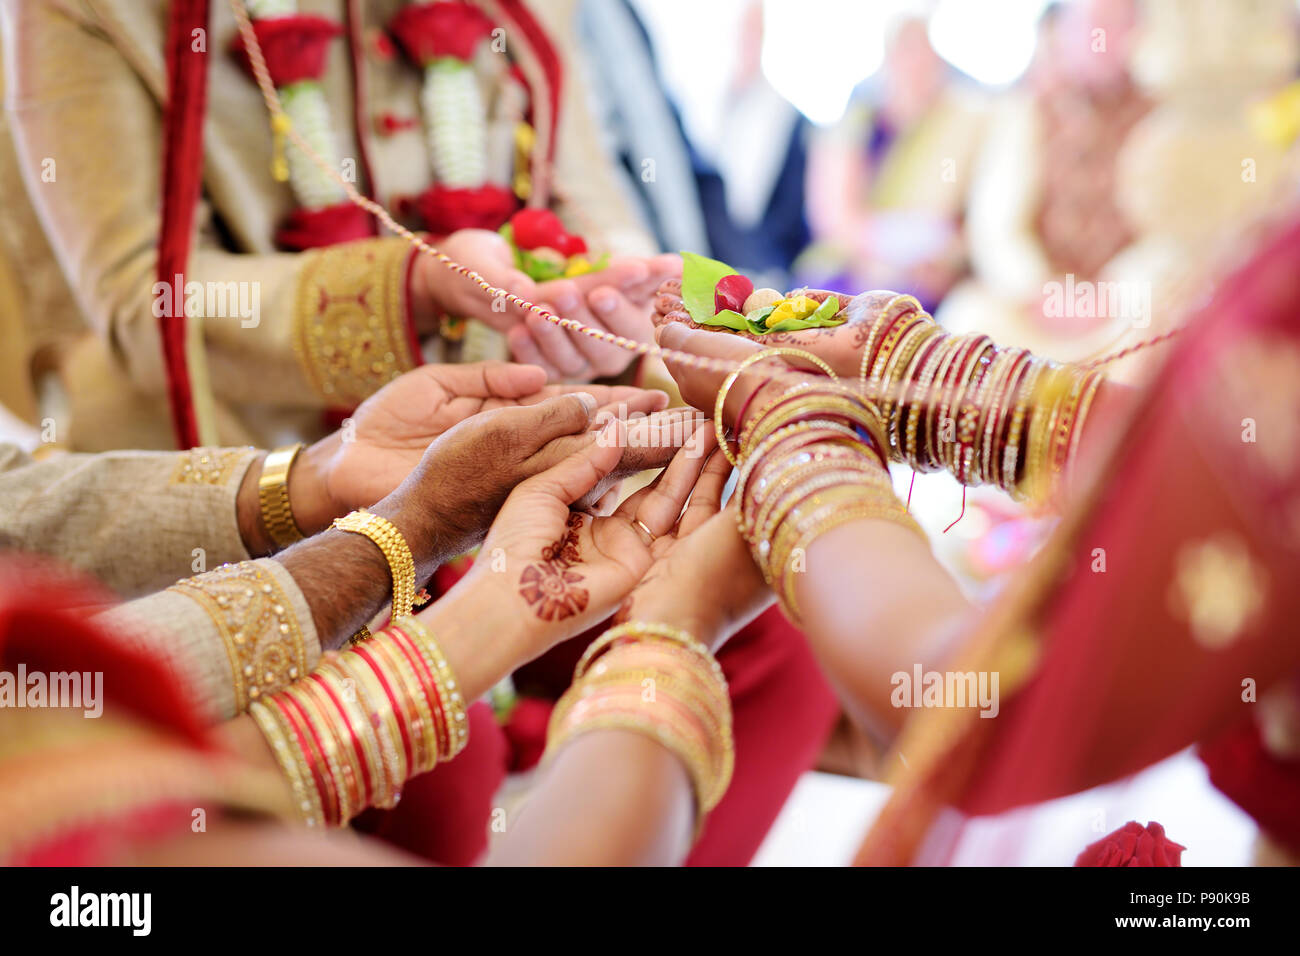 Amazing hindu wedding ceremony. Details of traditional indian wedding. Beautifully decorated hindu wedding accessories. Indian marriage traditions. Stock Photo